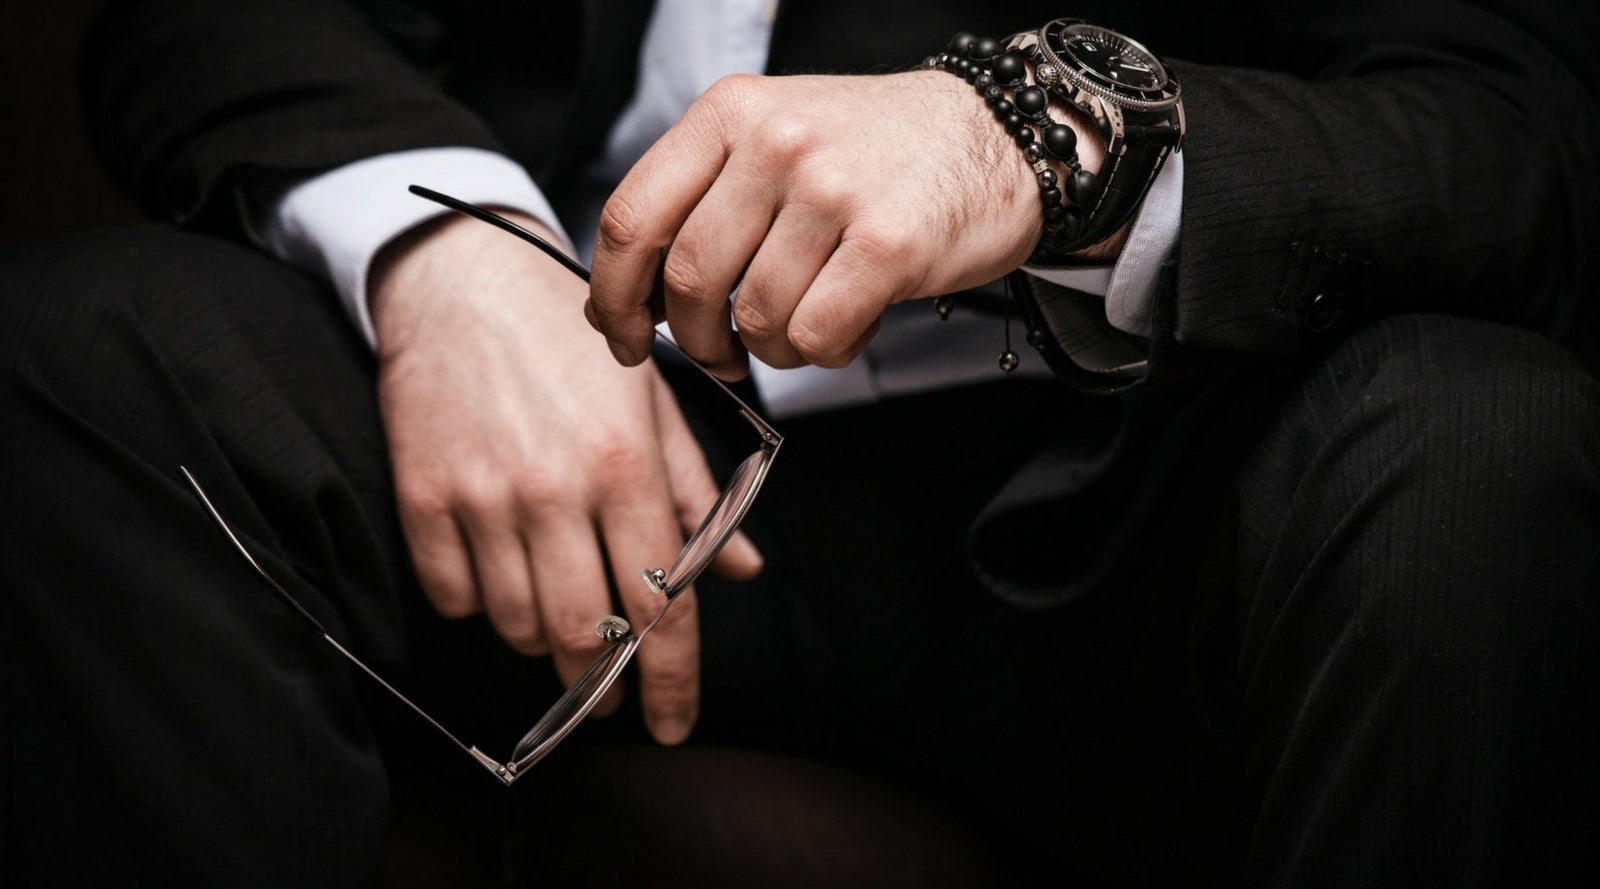 10 Best Men's Bracelets to Wear in 2018 - Cool Bracelets for Men